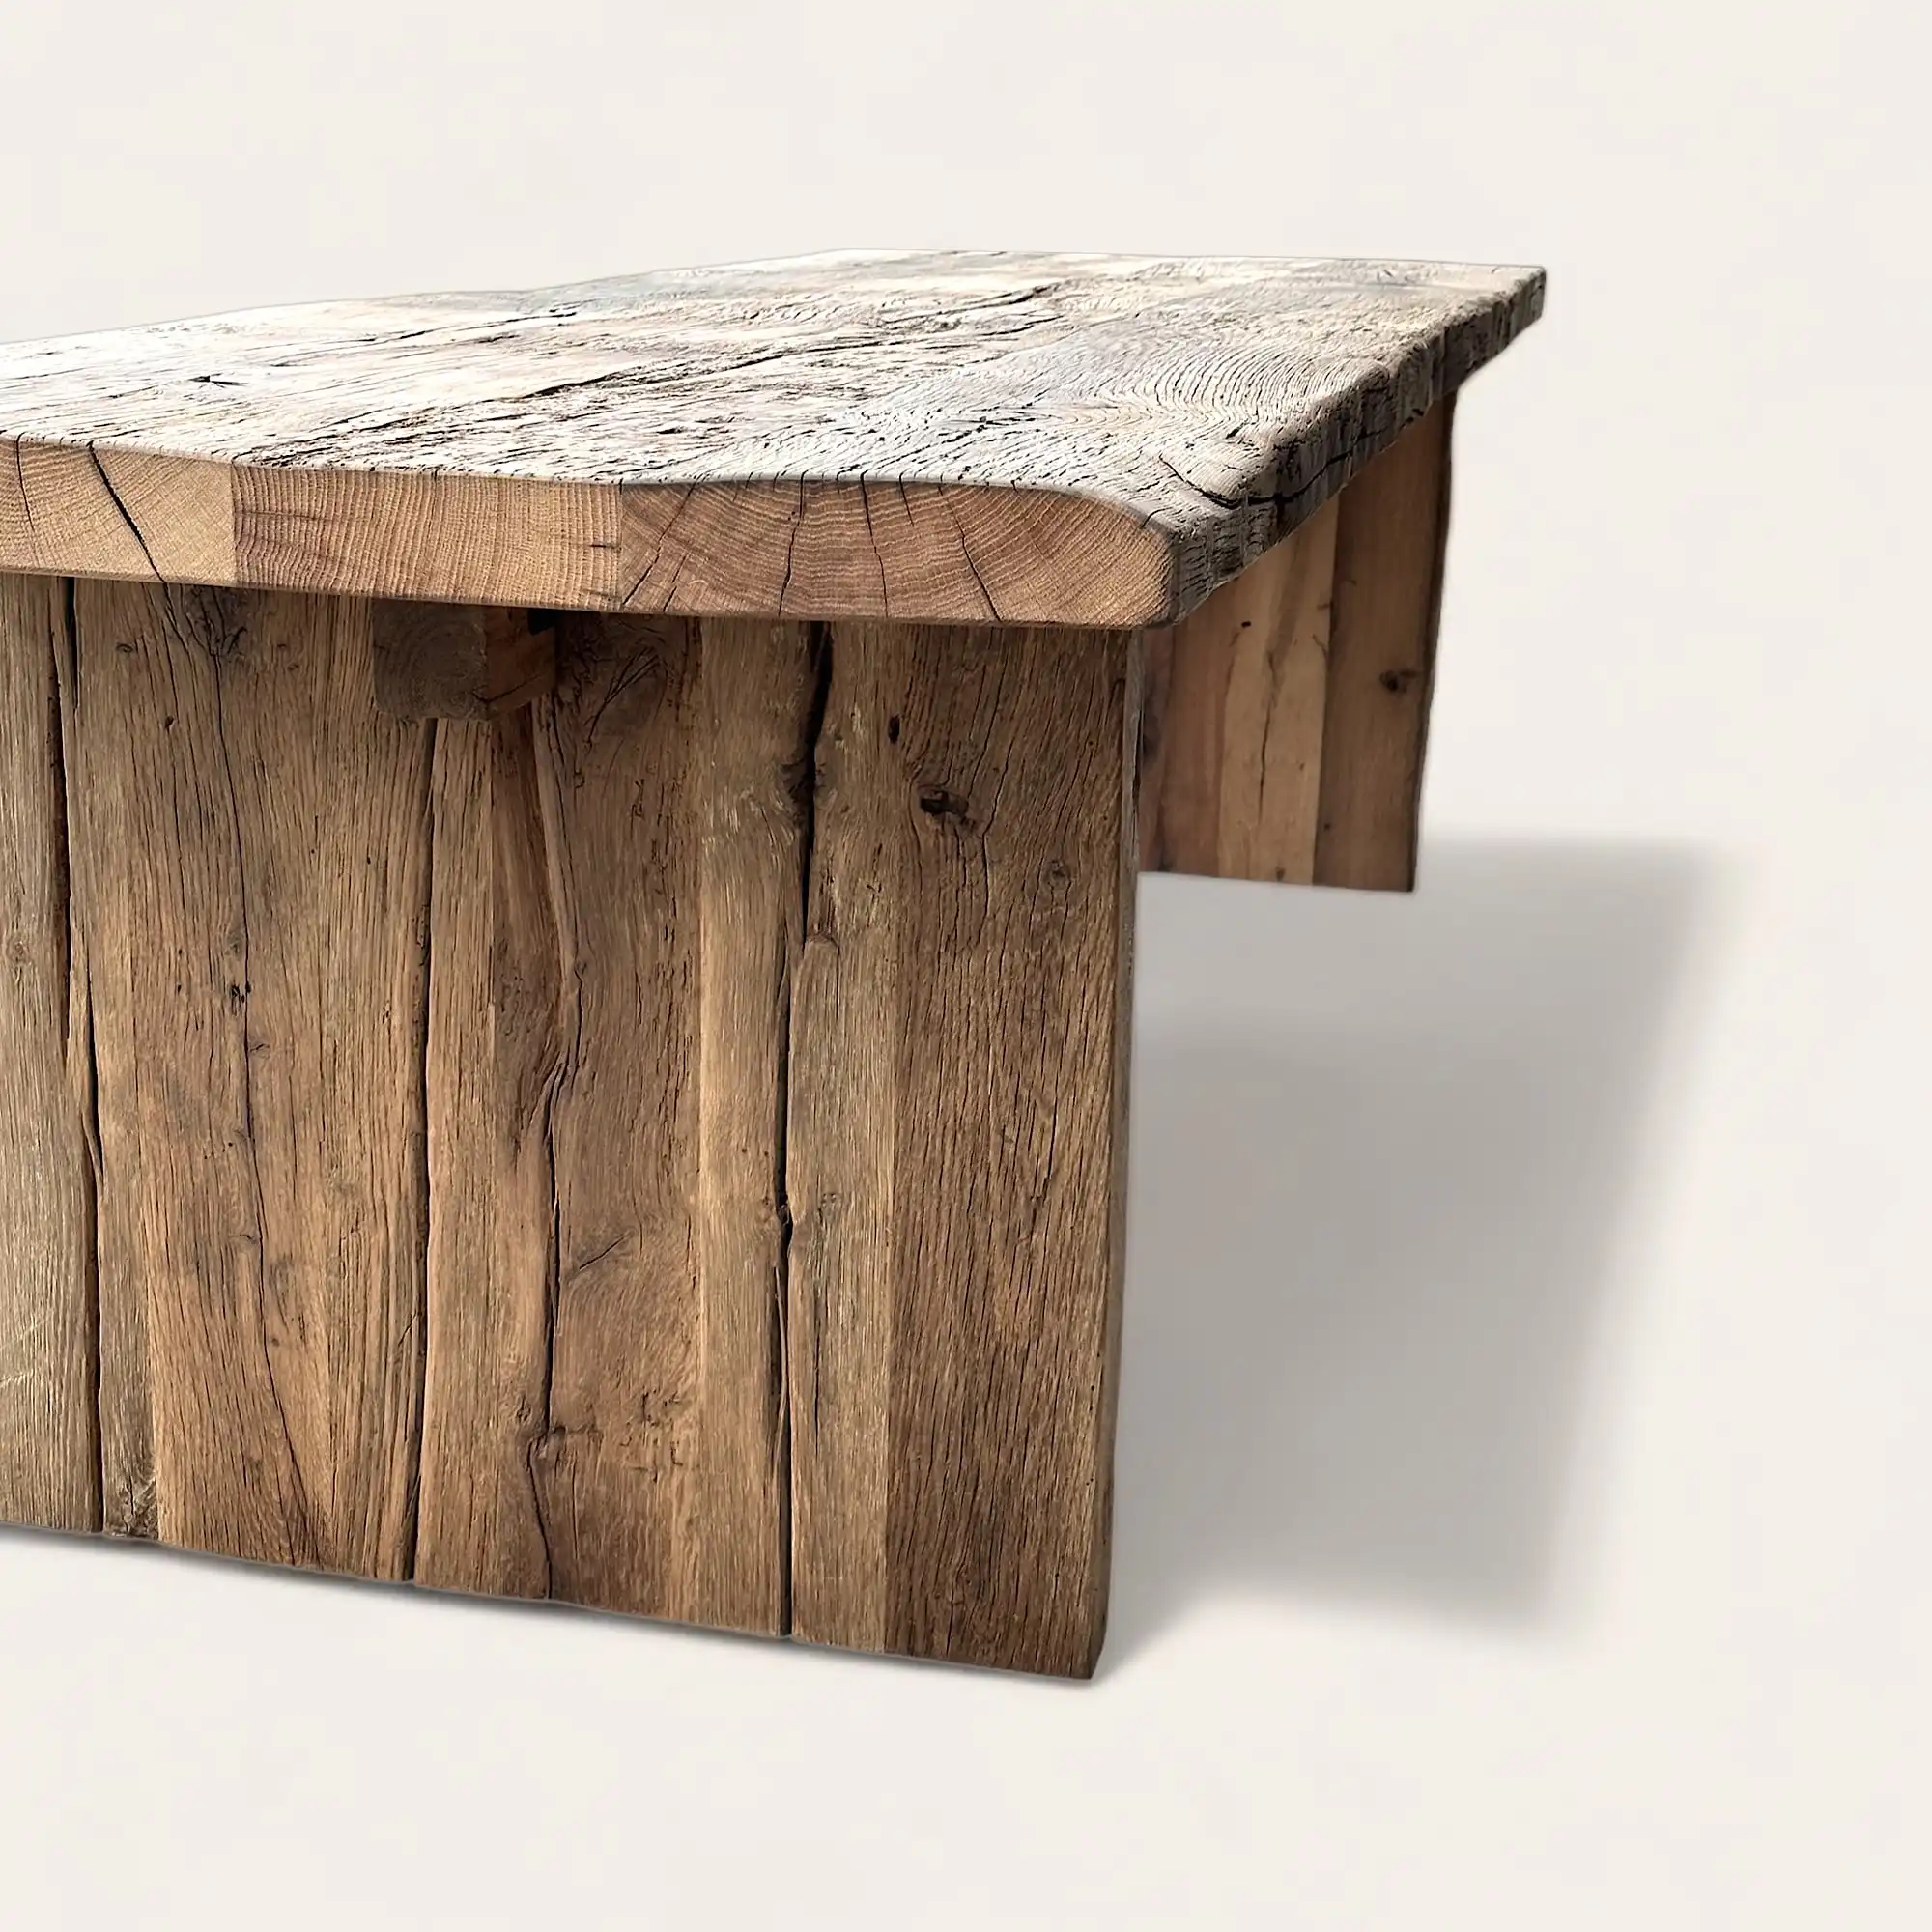  Une table en vieux bois rustique fabriquée à partir de bois récupéré. 